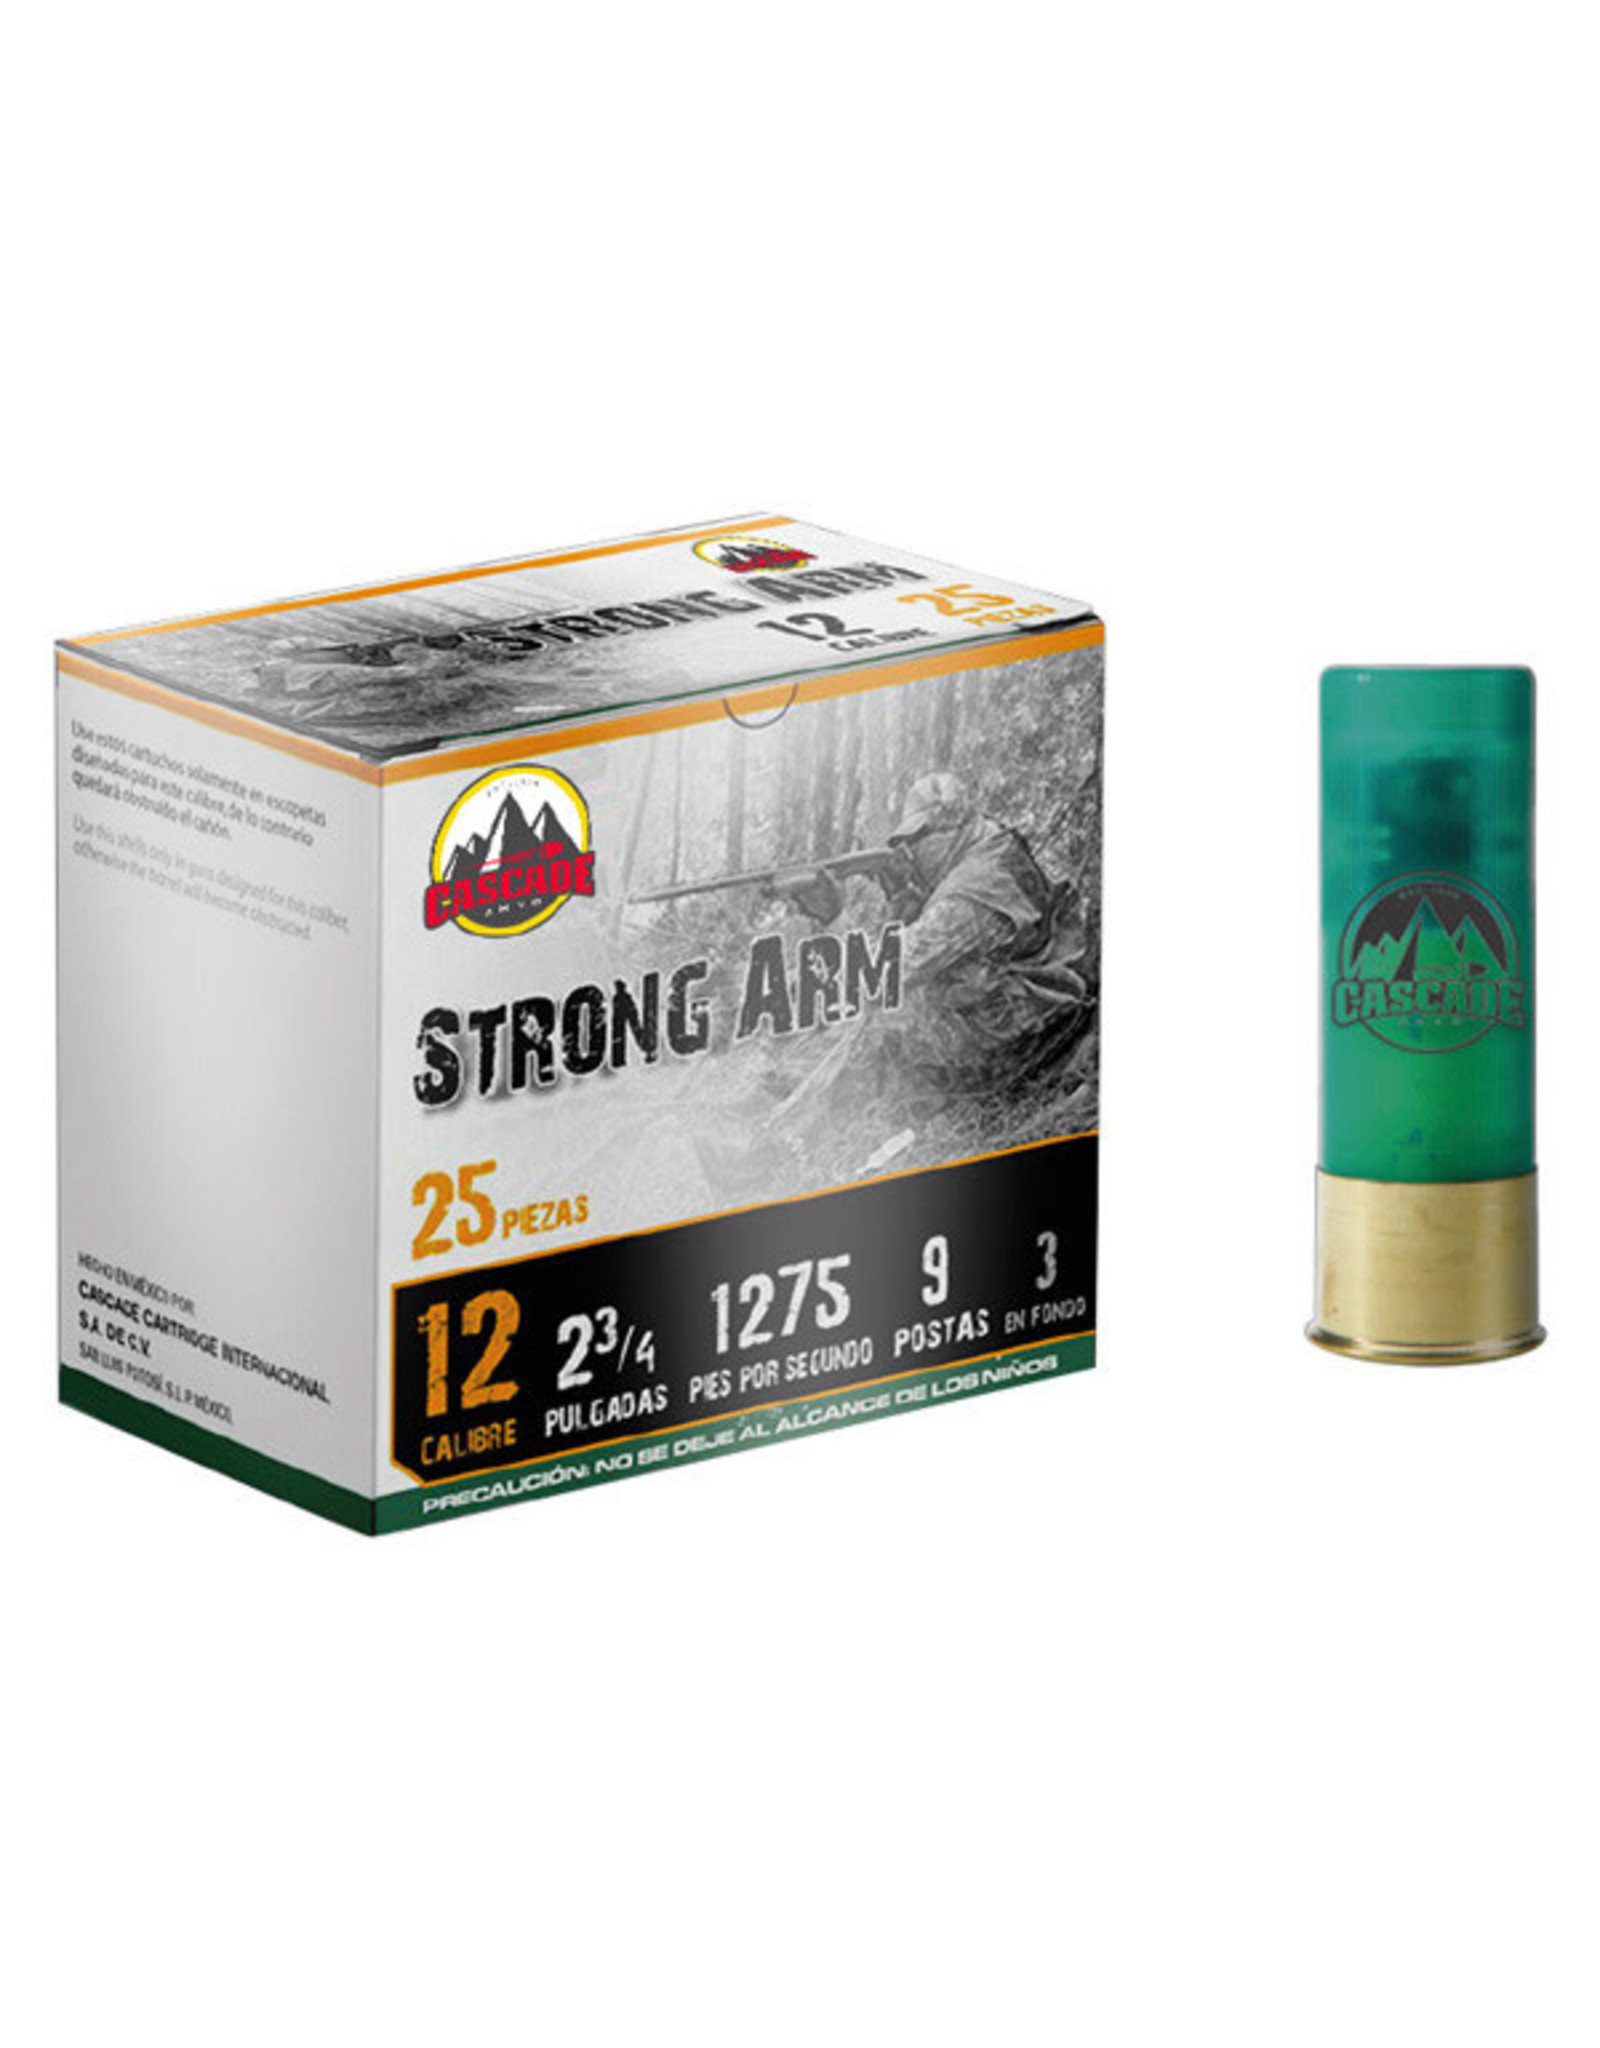 Cascade Ammo Cascade - 12ga 2-3/4" Buck Strong Arm - #00-9 - 25ct